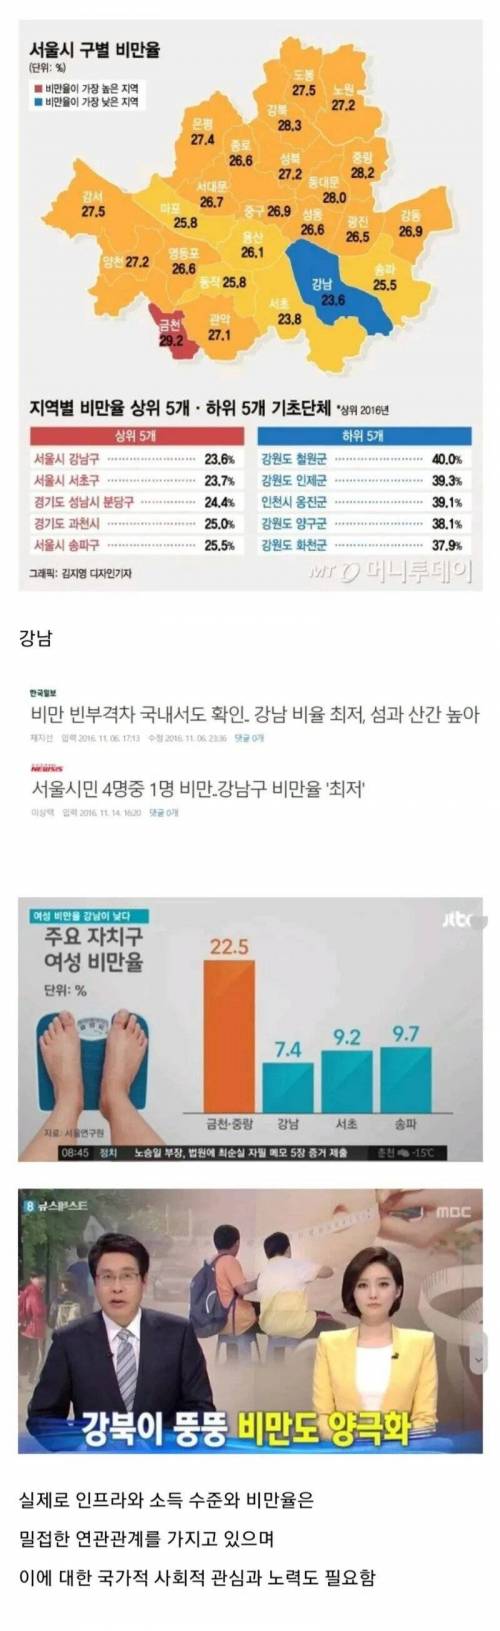 서울에서 가장 비만율이 낮은 지역..jpg